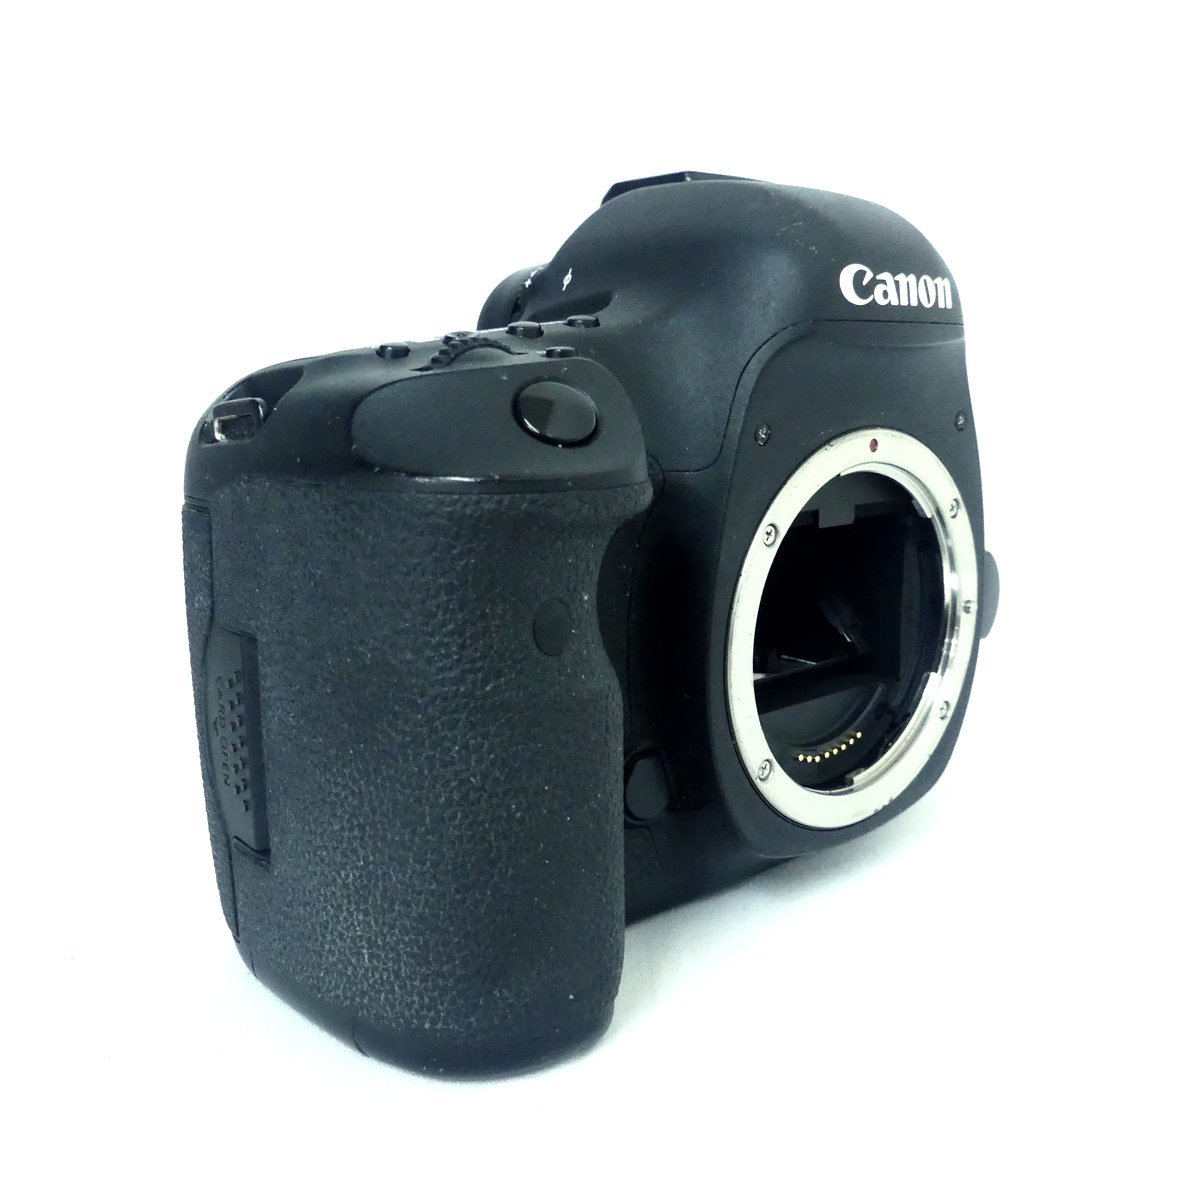 Canon キャノン EOS 5D MarkⅢ イオス5D マーク3 デジタル一眼レフ カメラボディのみ 通電OK USED /2306C_画像2